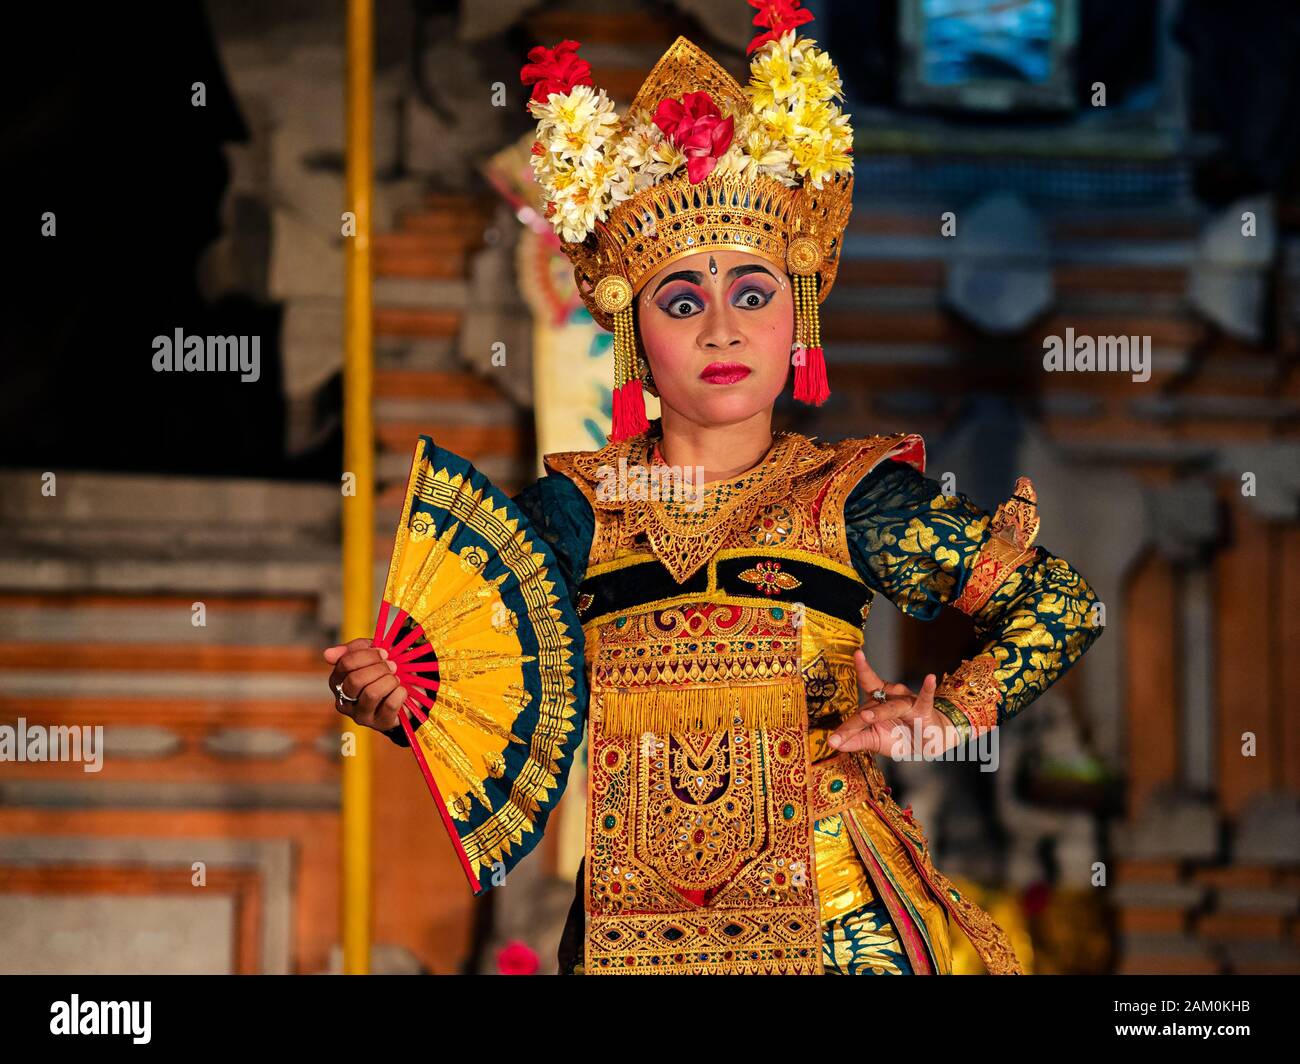 Bailarina balinesa que baila Legong con trajes tradicionales en el templo Pura Saraswati en Ubud, Bali, Indonesia. Foto de stock